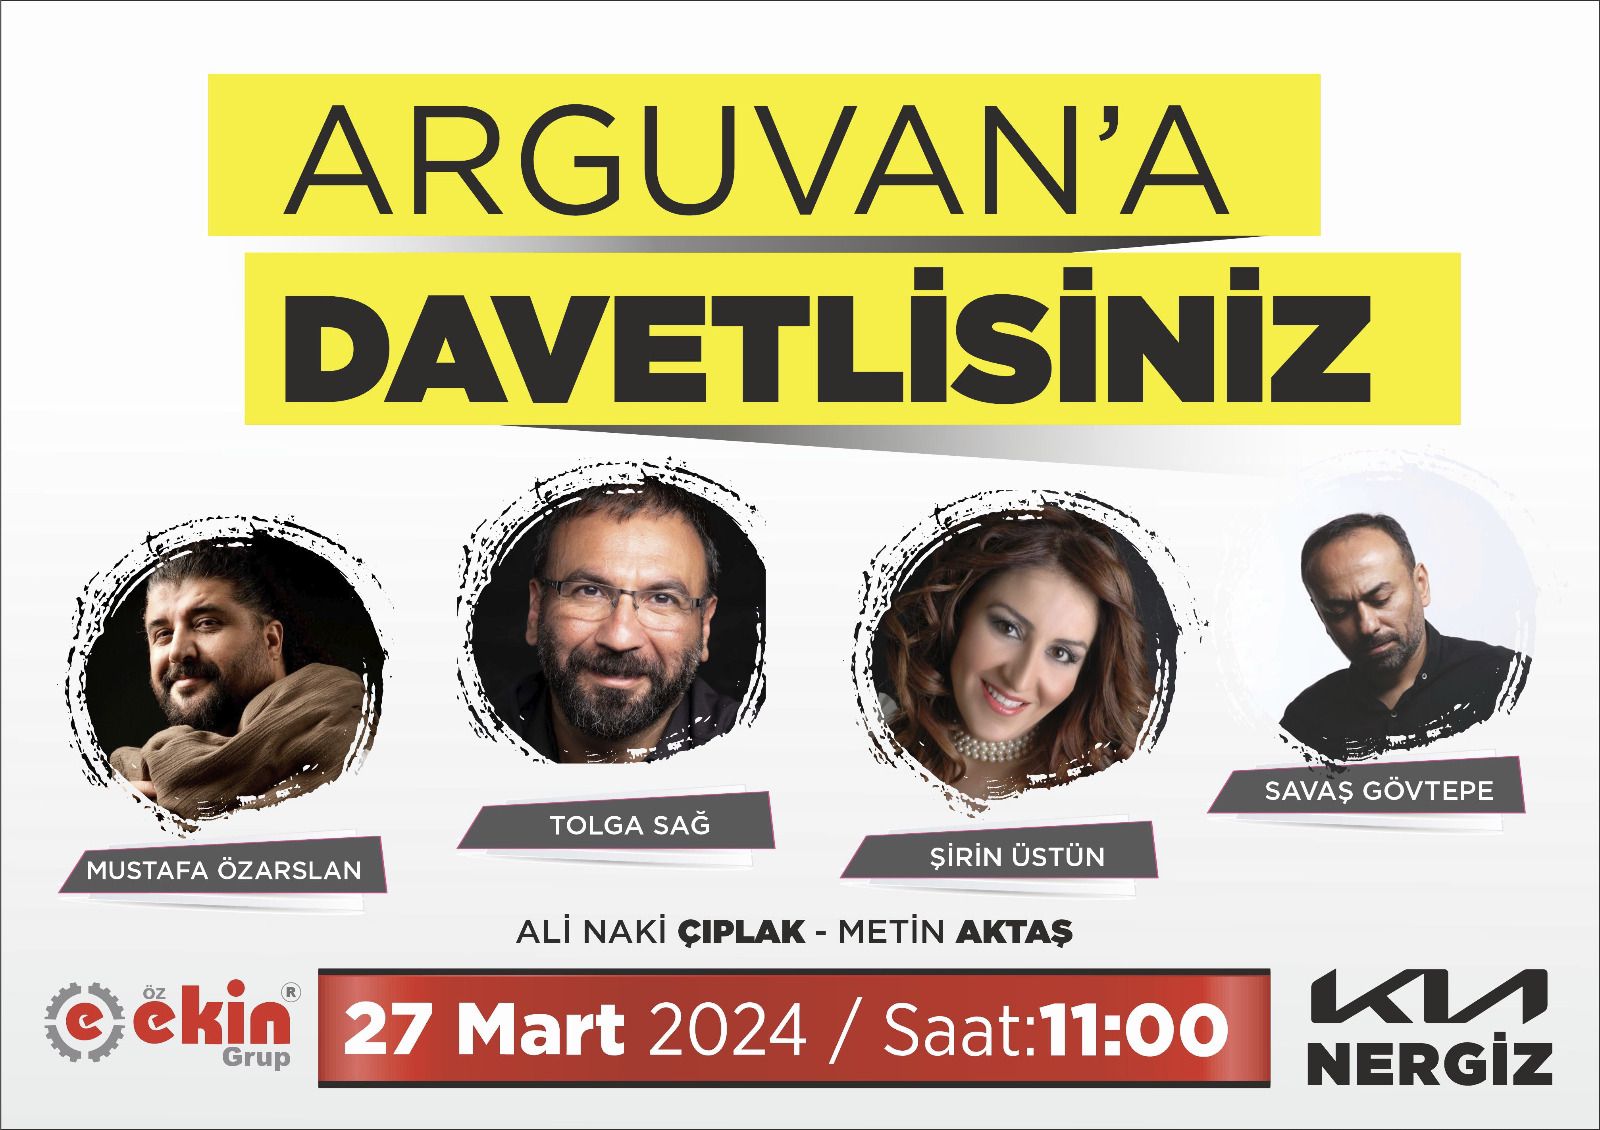 Tolga Sağ ve Mustafa Özarslan Arguvan’da Konser Veriyor